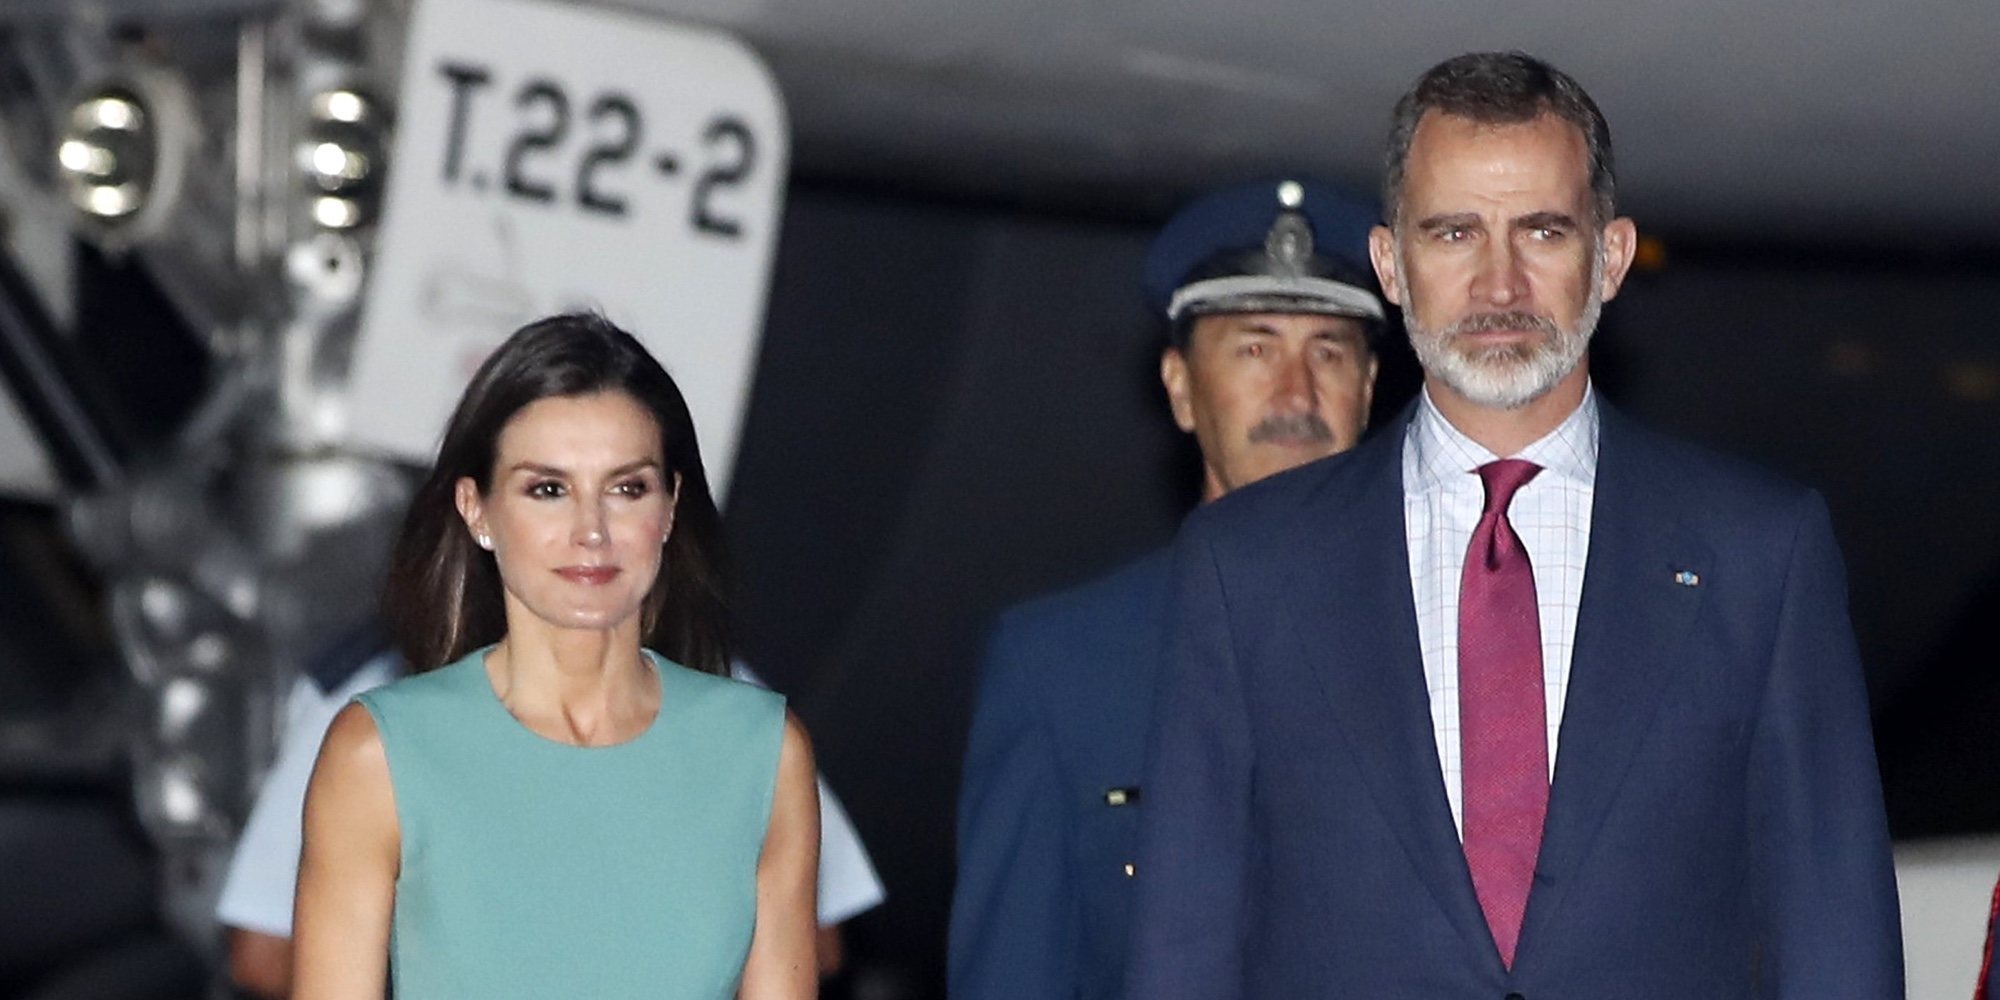 El incidente con la escalerilla de los Reyes Felipe y Letizia se salda con una dimisión